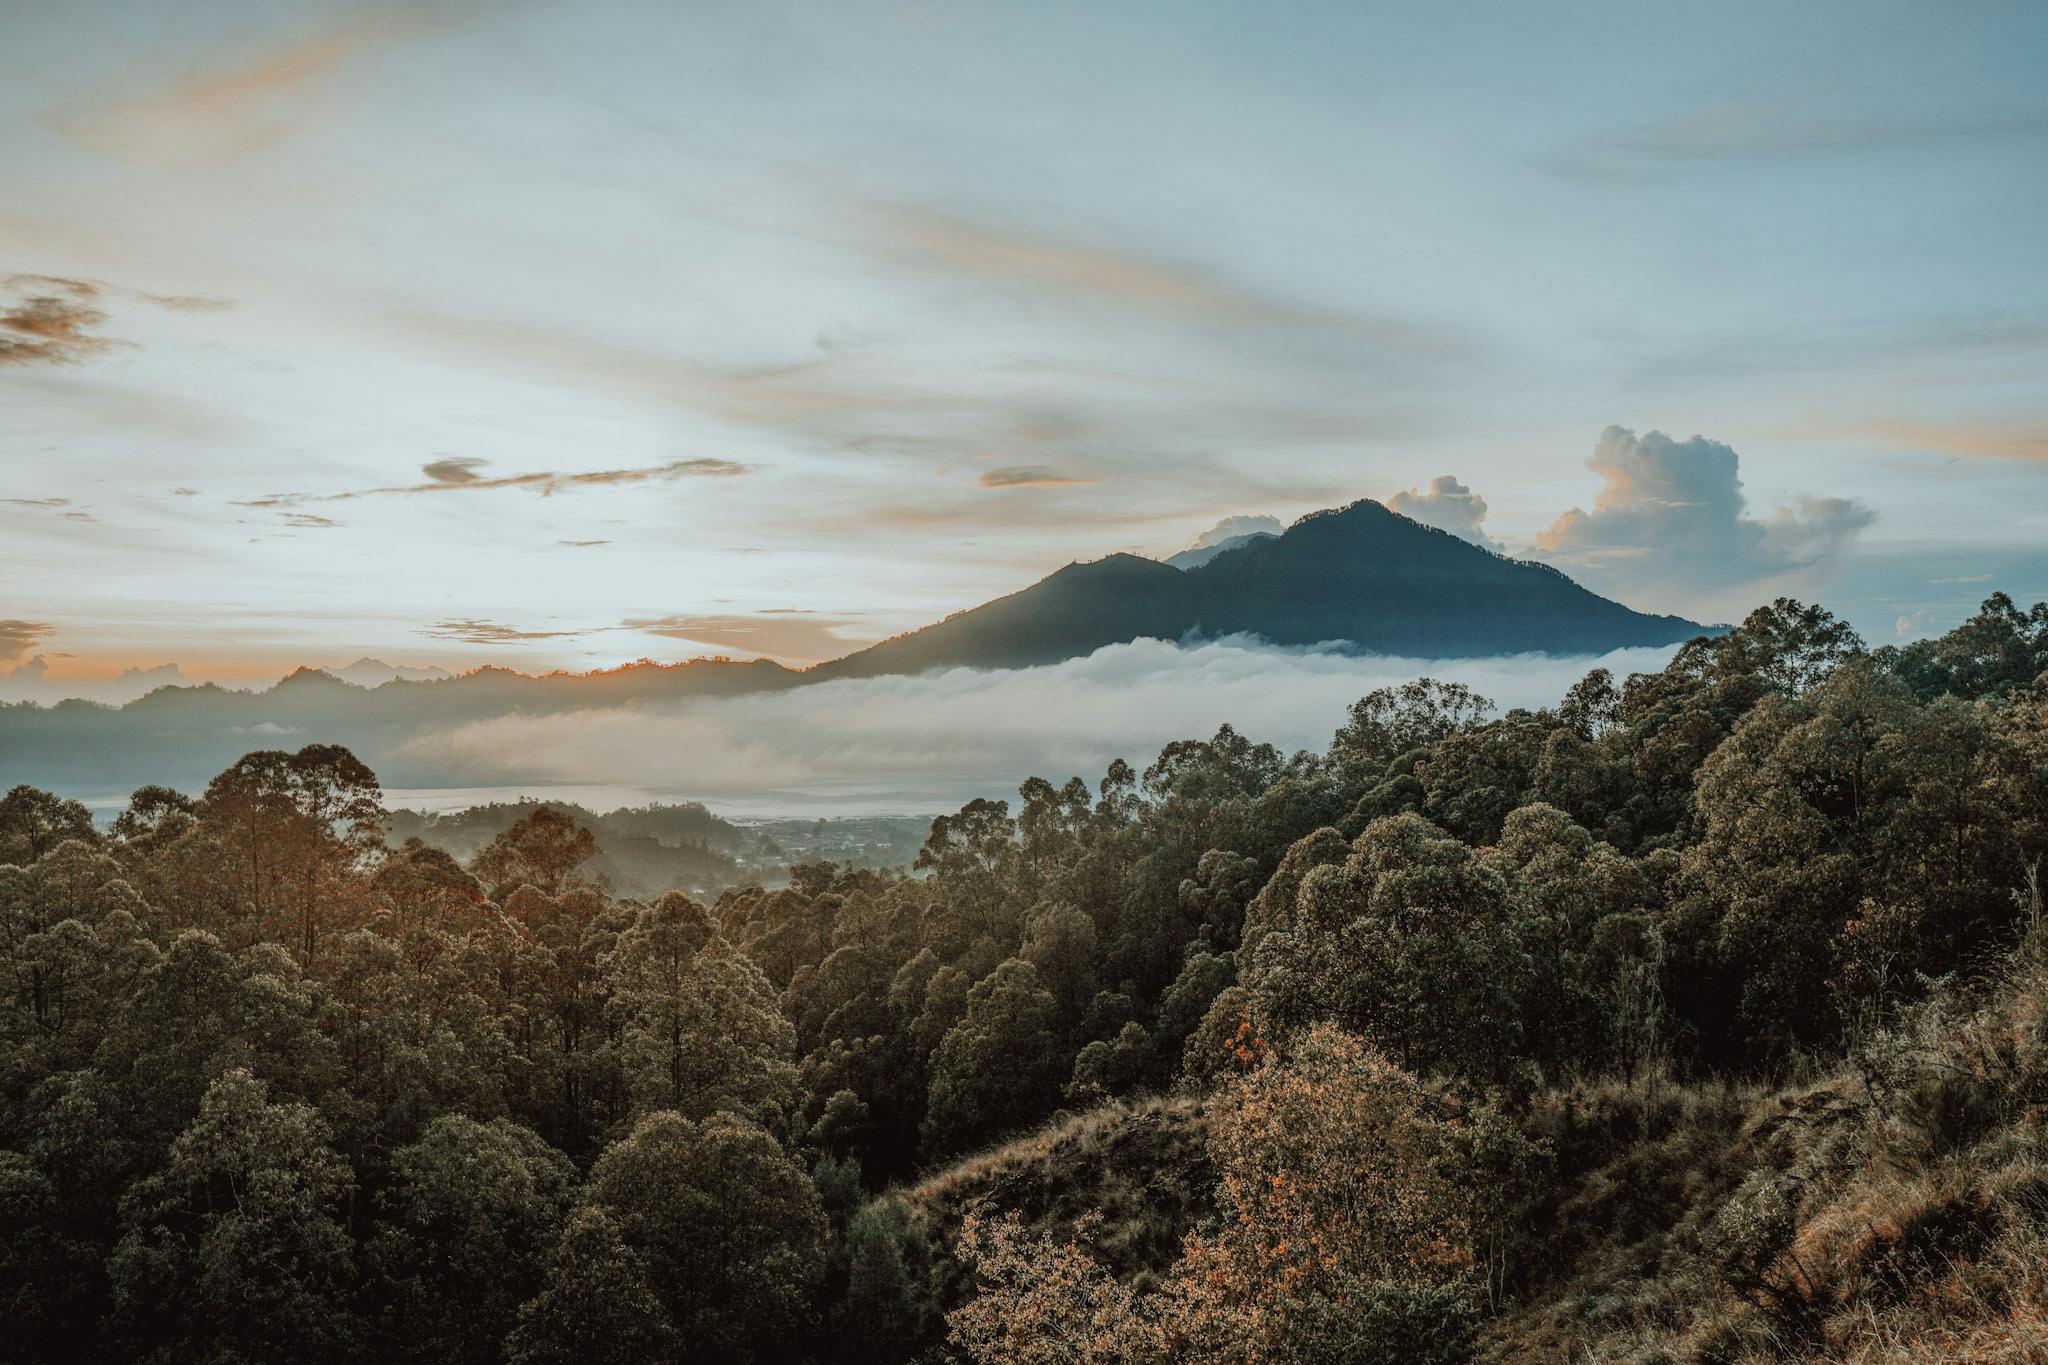 Why visit Mount Batur? Is it worth it?